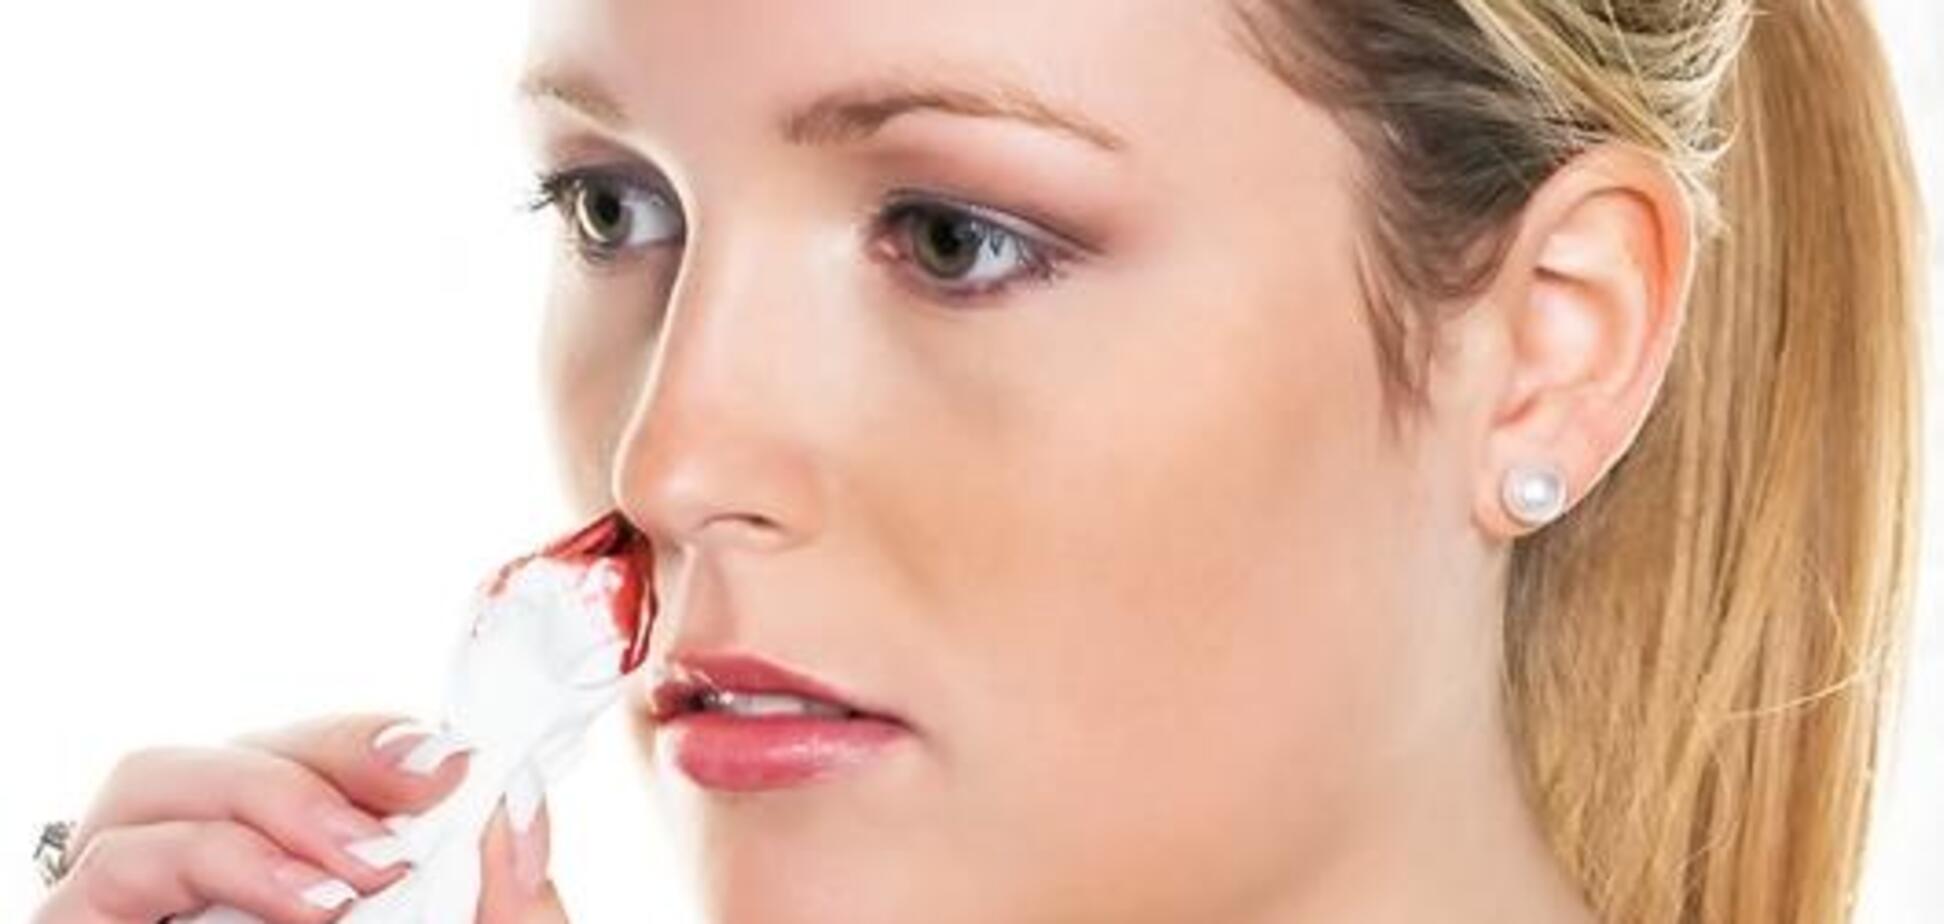 Носовое кровотечение - как реагировать на проблему